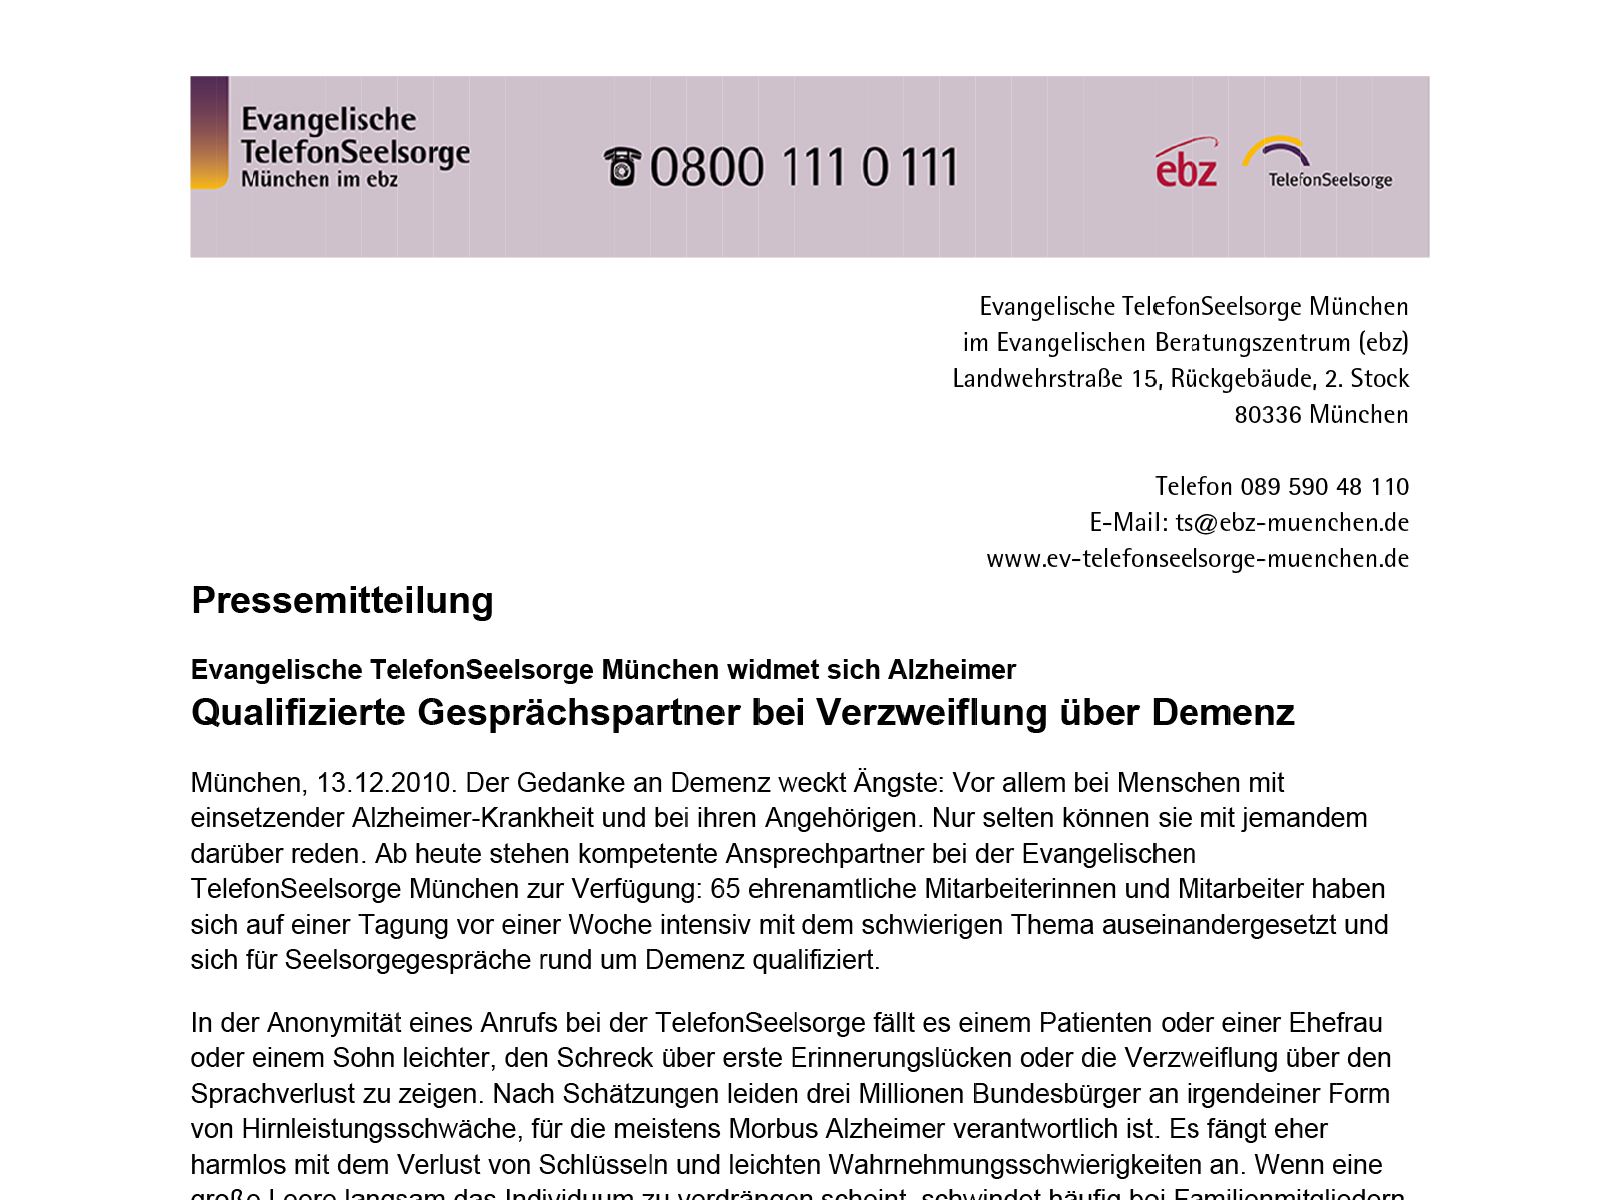 Pressemitteilung der Evangelischen TelefonSeelsorge München: Thema »Demenz«